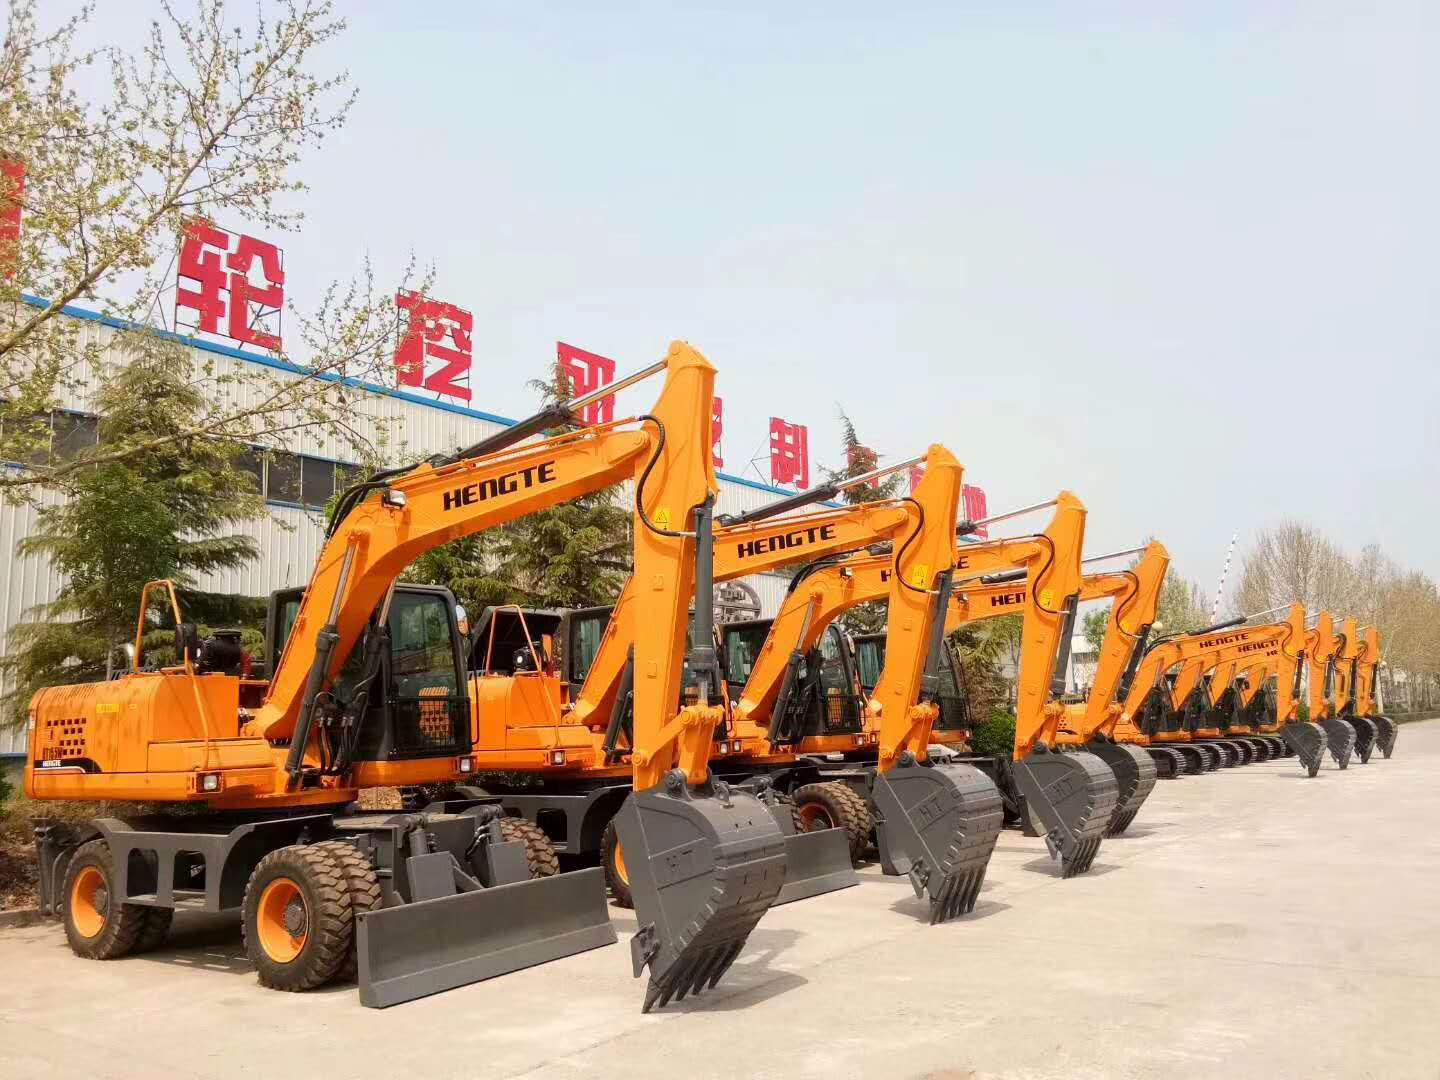 西藏挖掘机 林芝挖掘机厂家直销2020款恒特155轮式挖掘机西藏挖掘机价格表